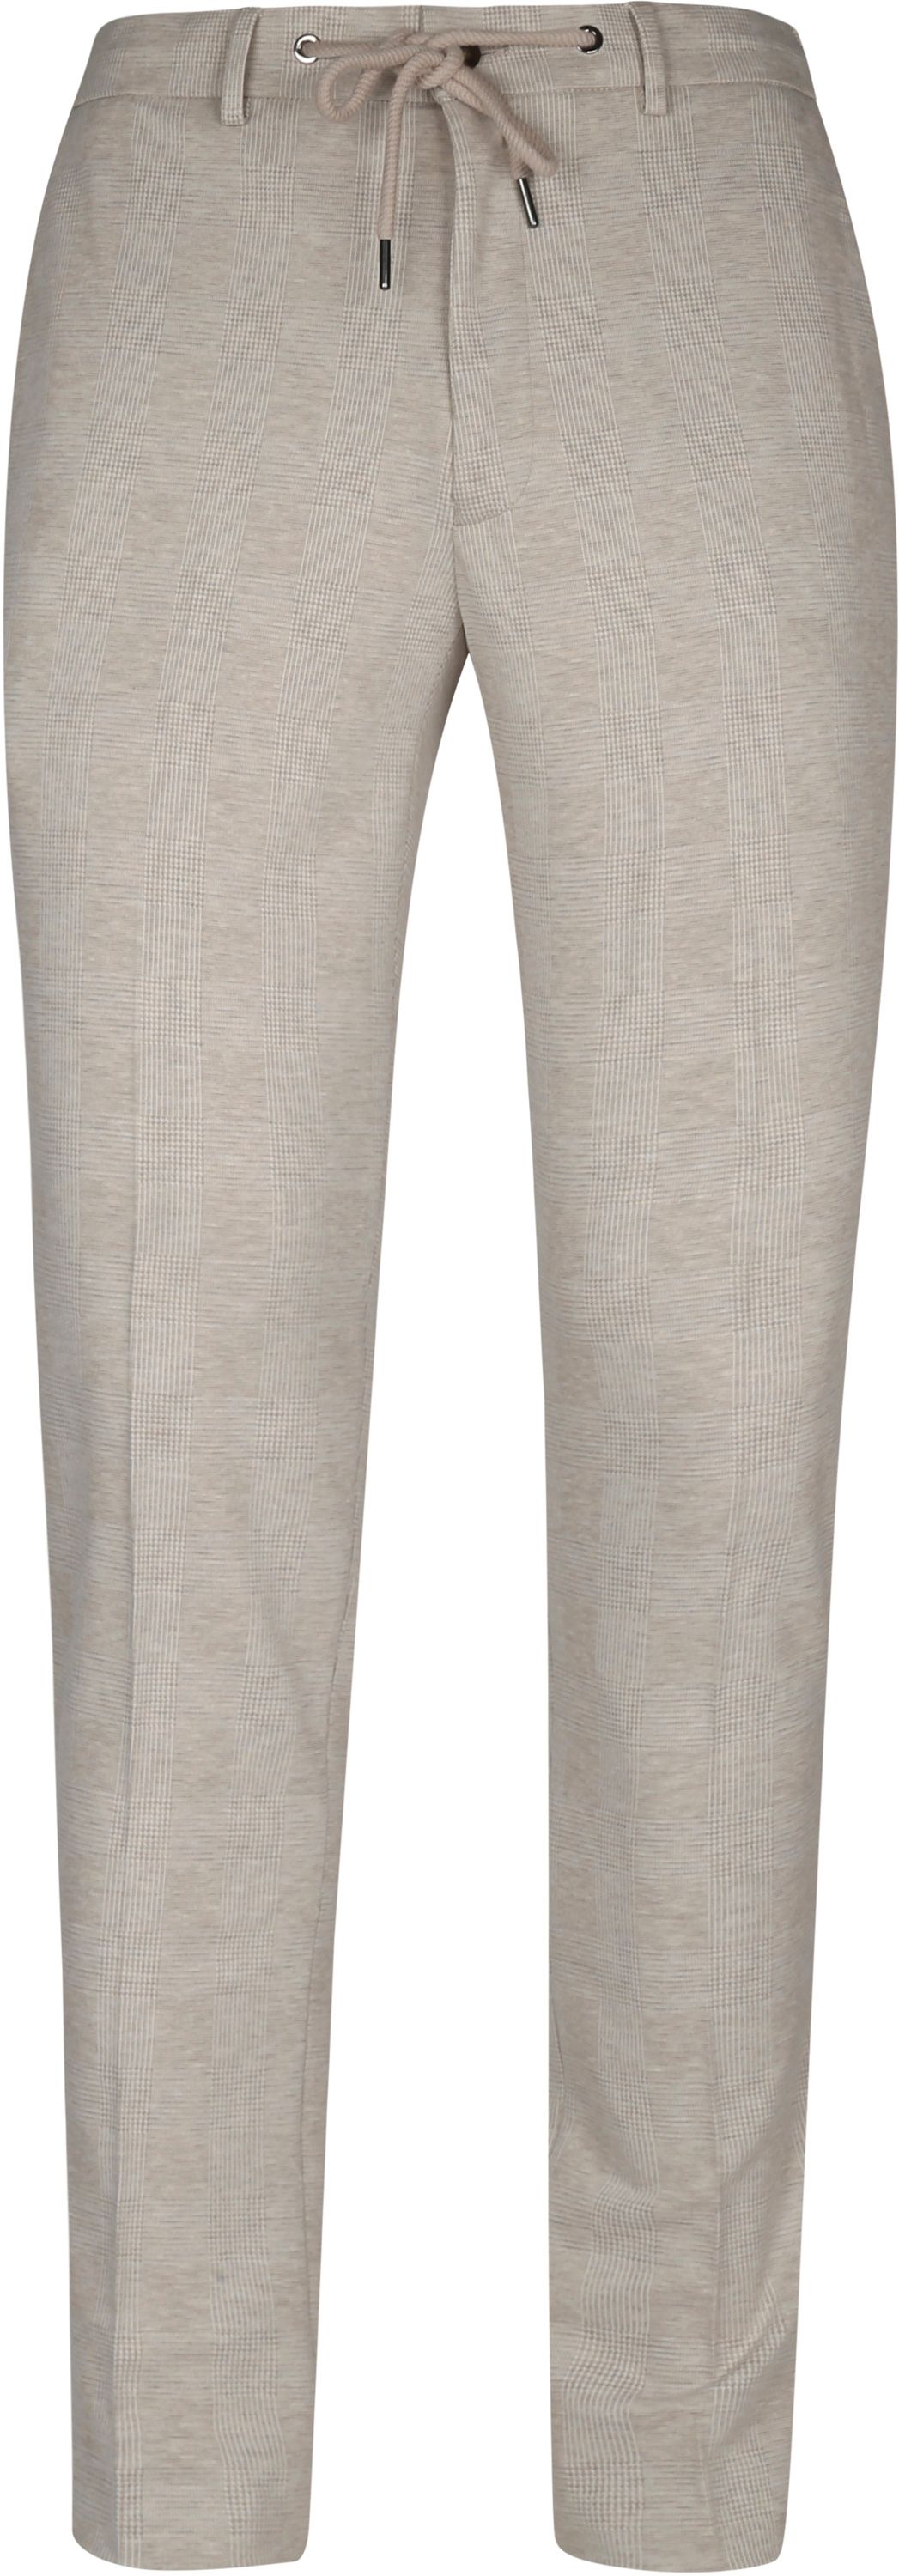 Suitable Pantalon Jersey Sable A Carreaux Blanc cassé taille 54